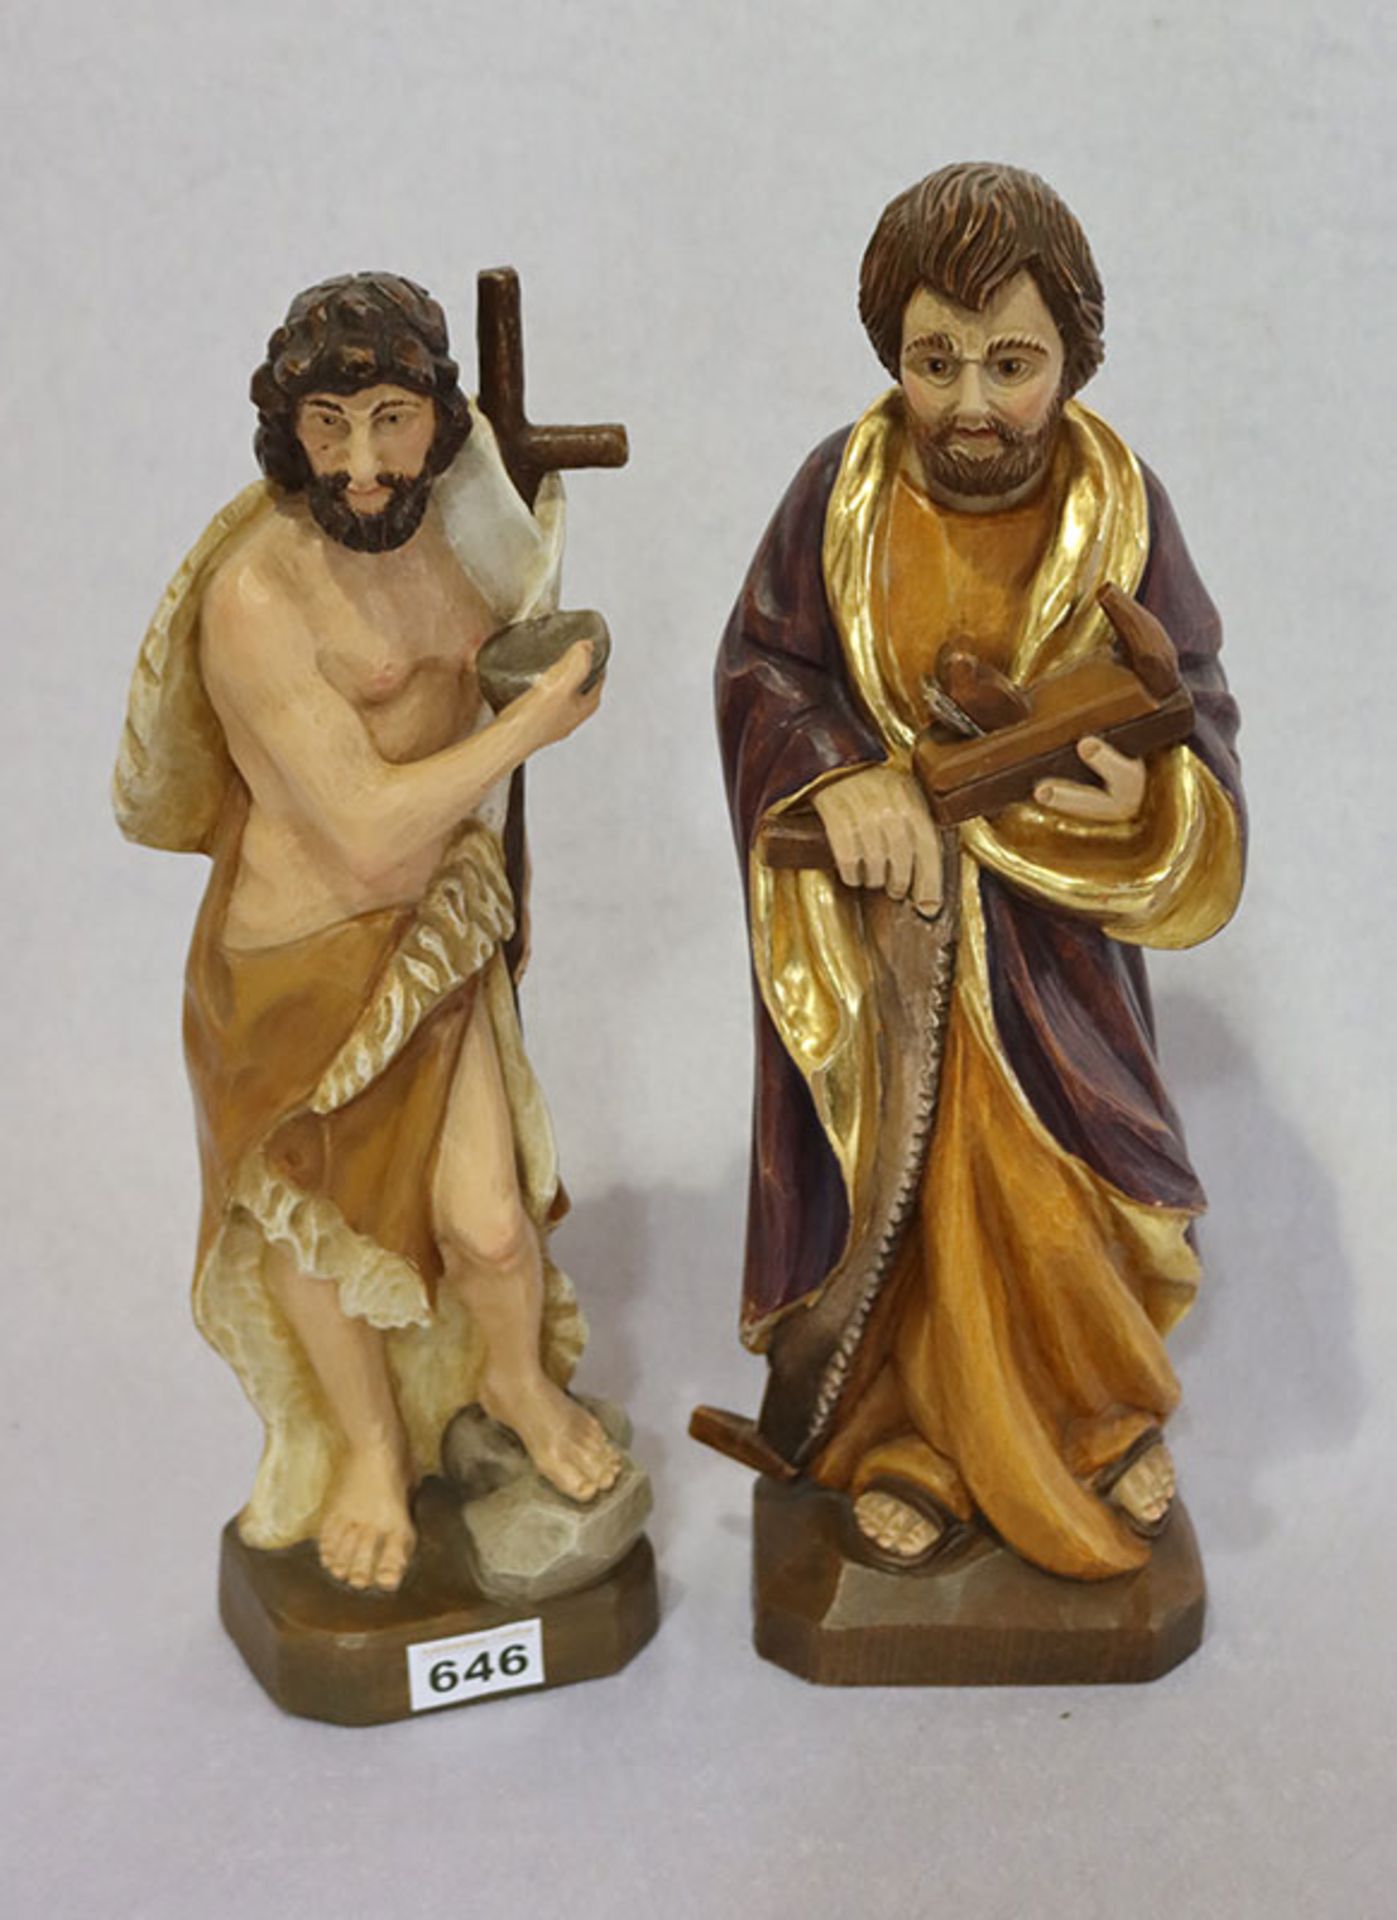 2 Holzfiguren 'Heiliger Josef', H 43 cm, und 'Jesus', H 42 cm, beide farbig gefaßt, teils bestossen,